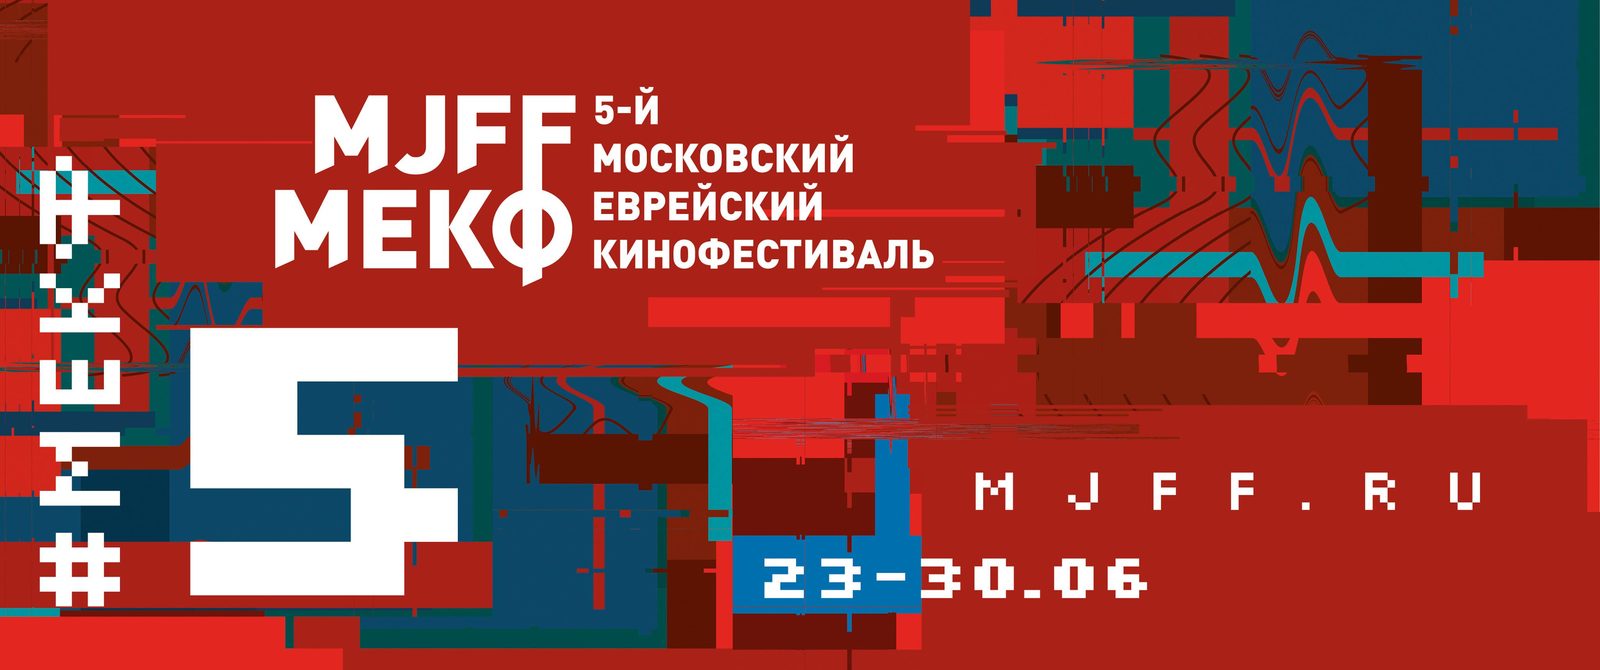 Объявлена программа Пятого Московского еврейского кинофестиваля